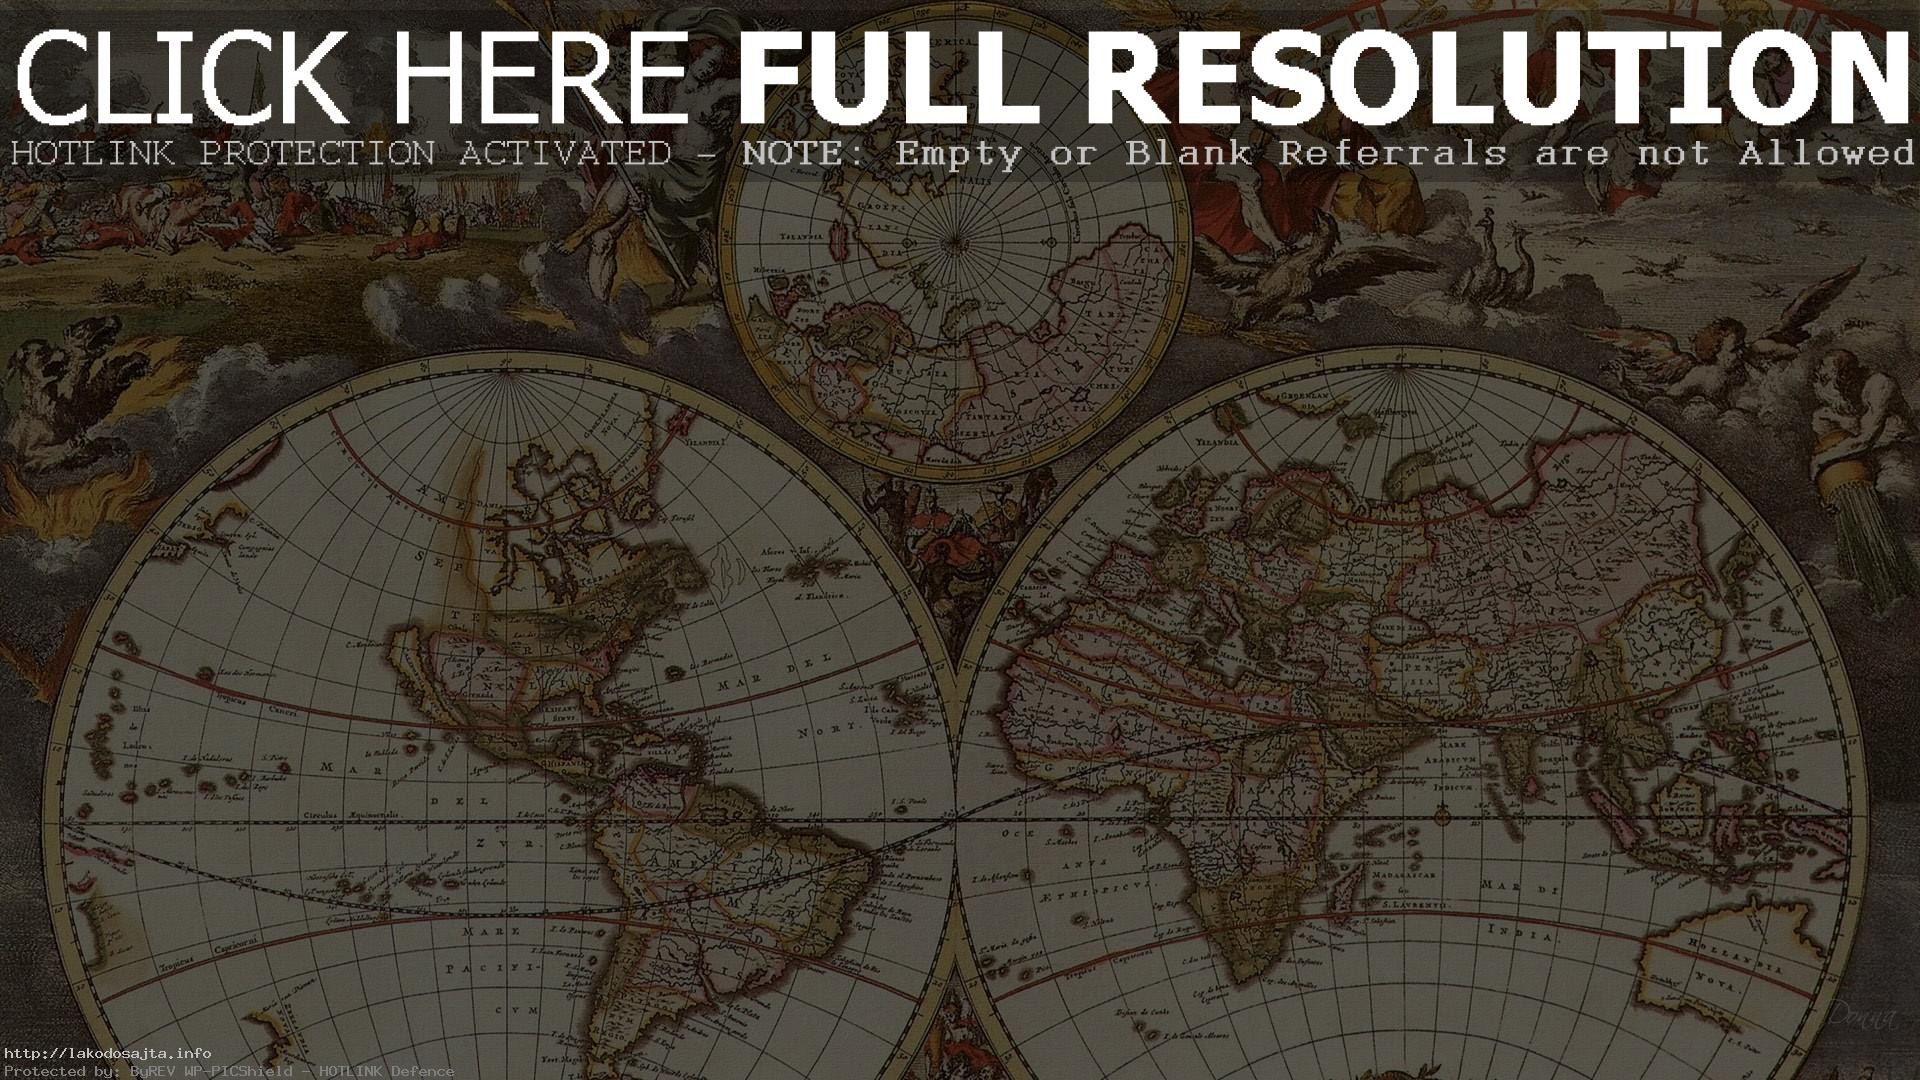 antique world map desktop wallpaper